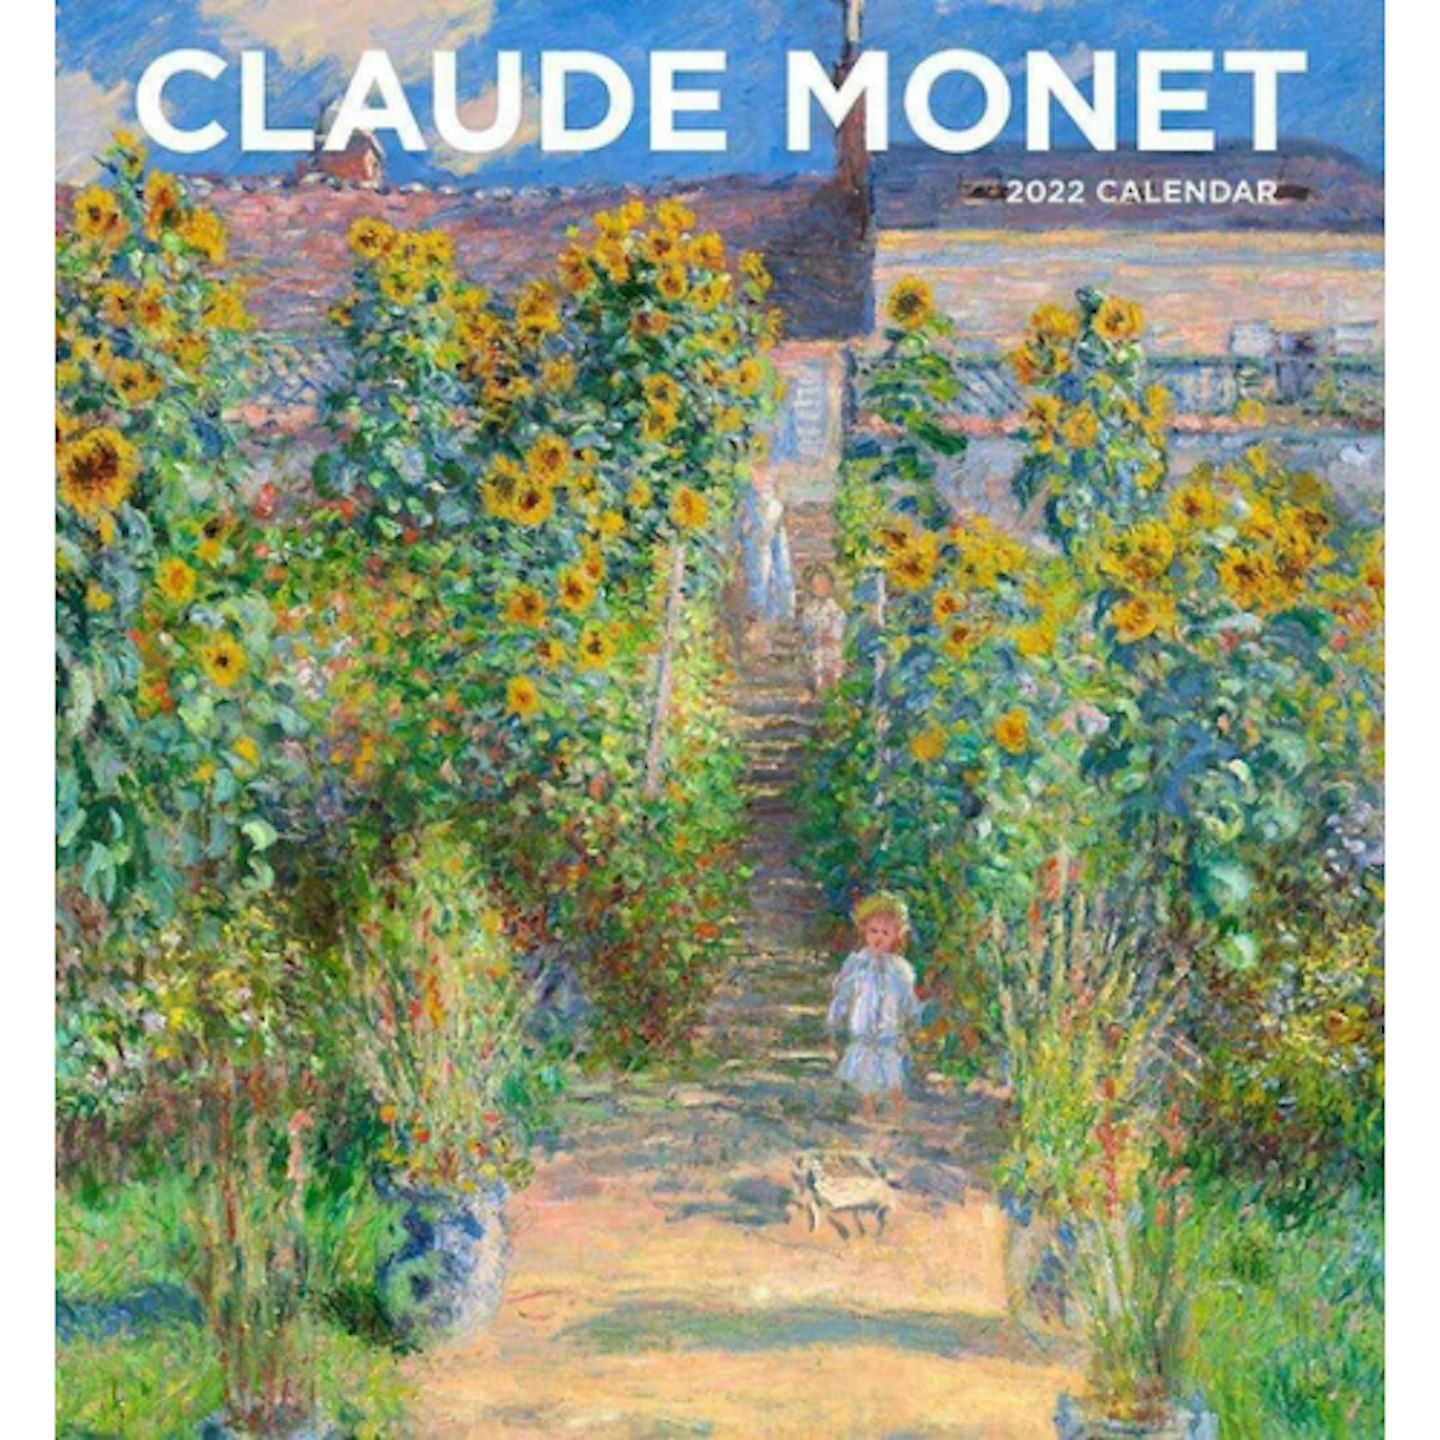 Pomegranate Claude Monet 2022 Wall Calendar